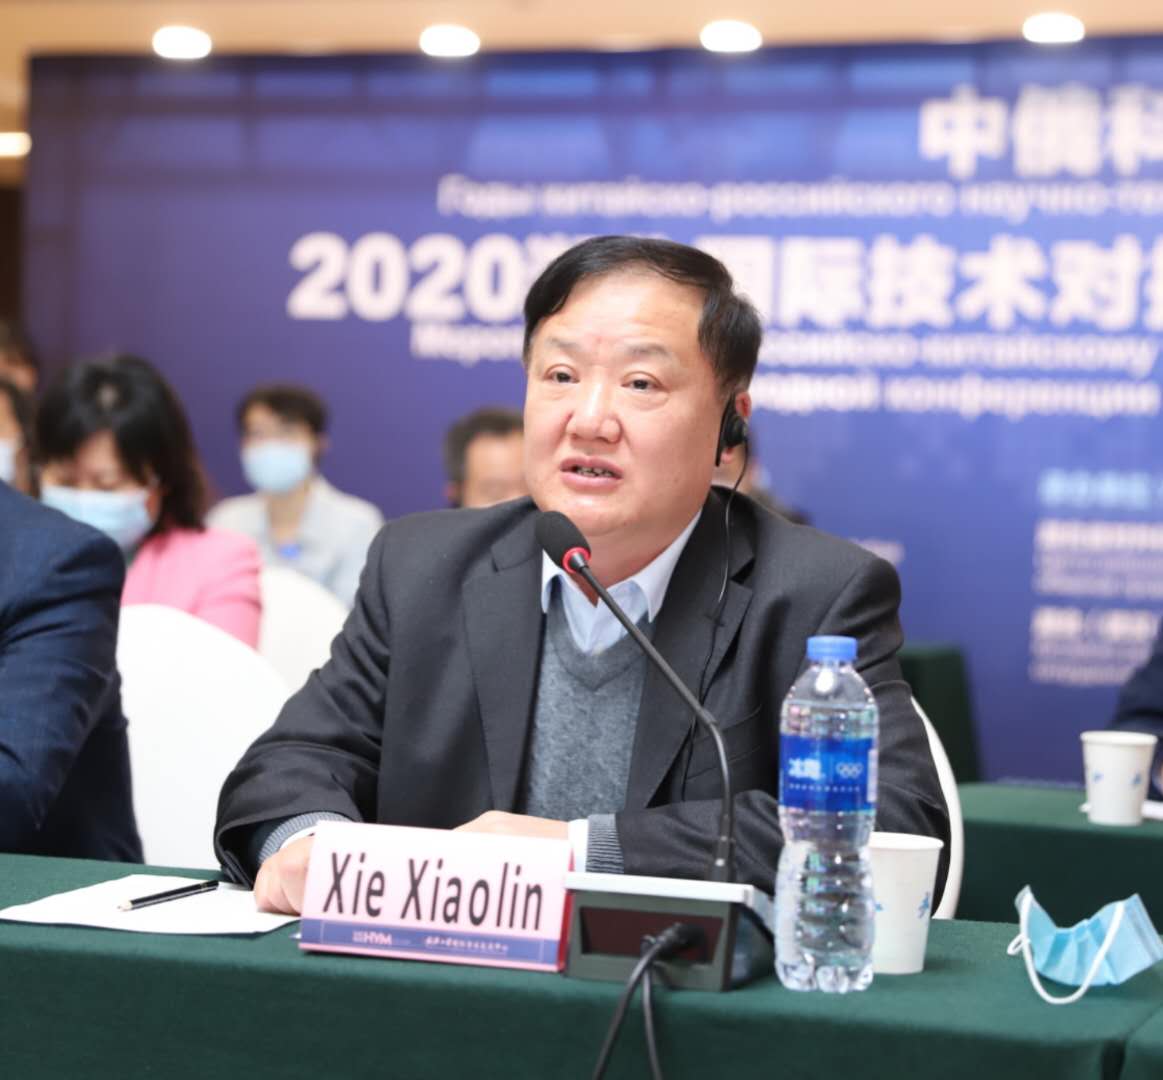 华中科技大学参加2020湖北国际技术对接洽谈会中俄技术对接活动